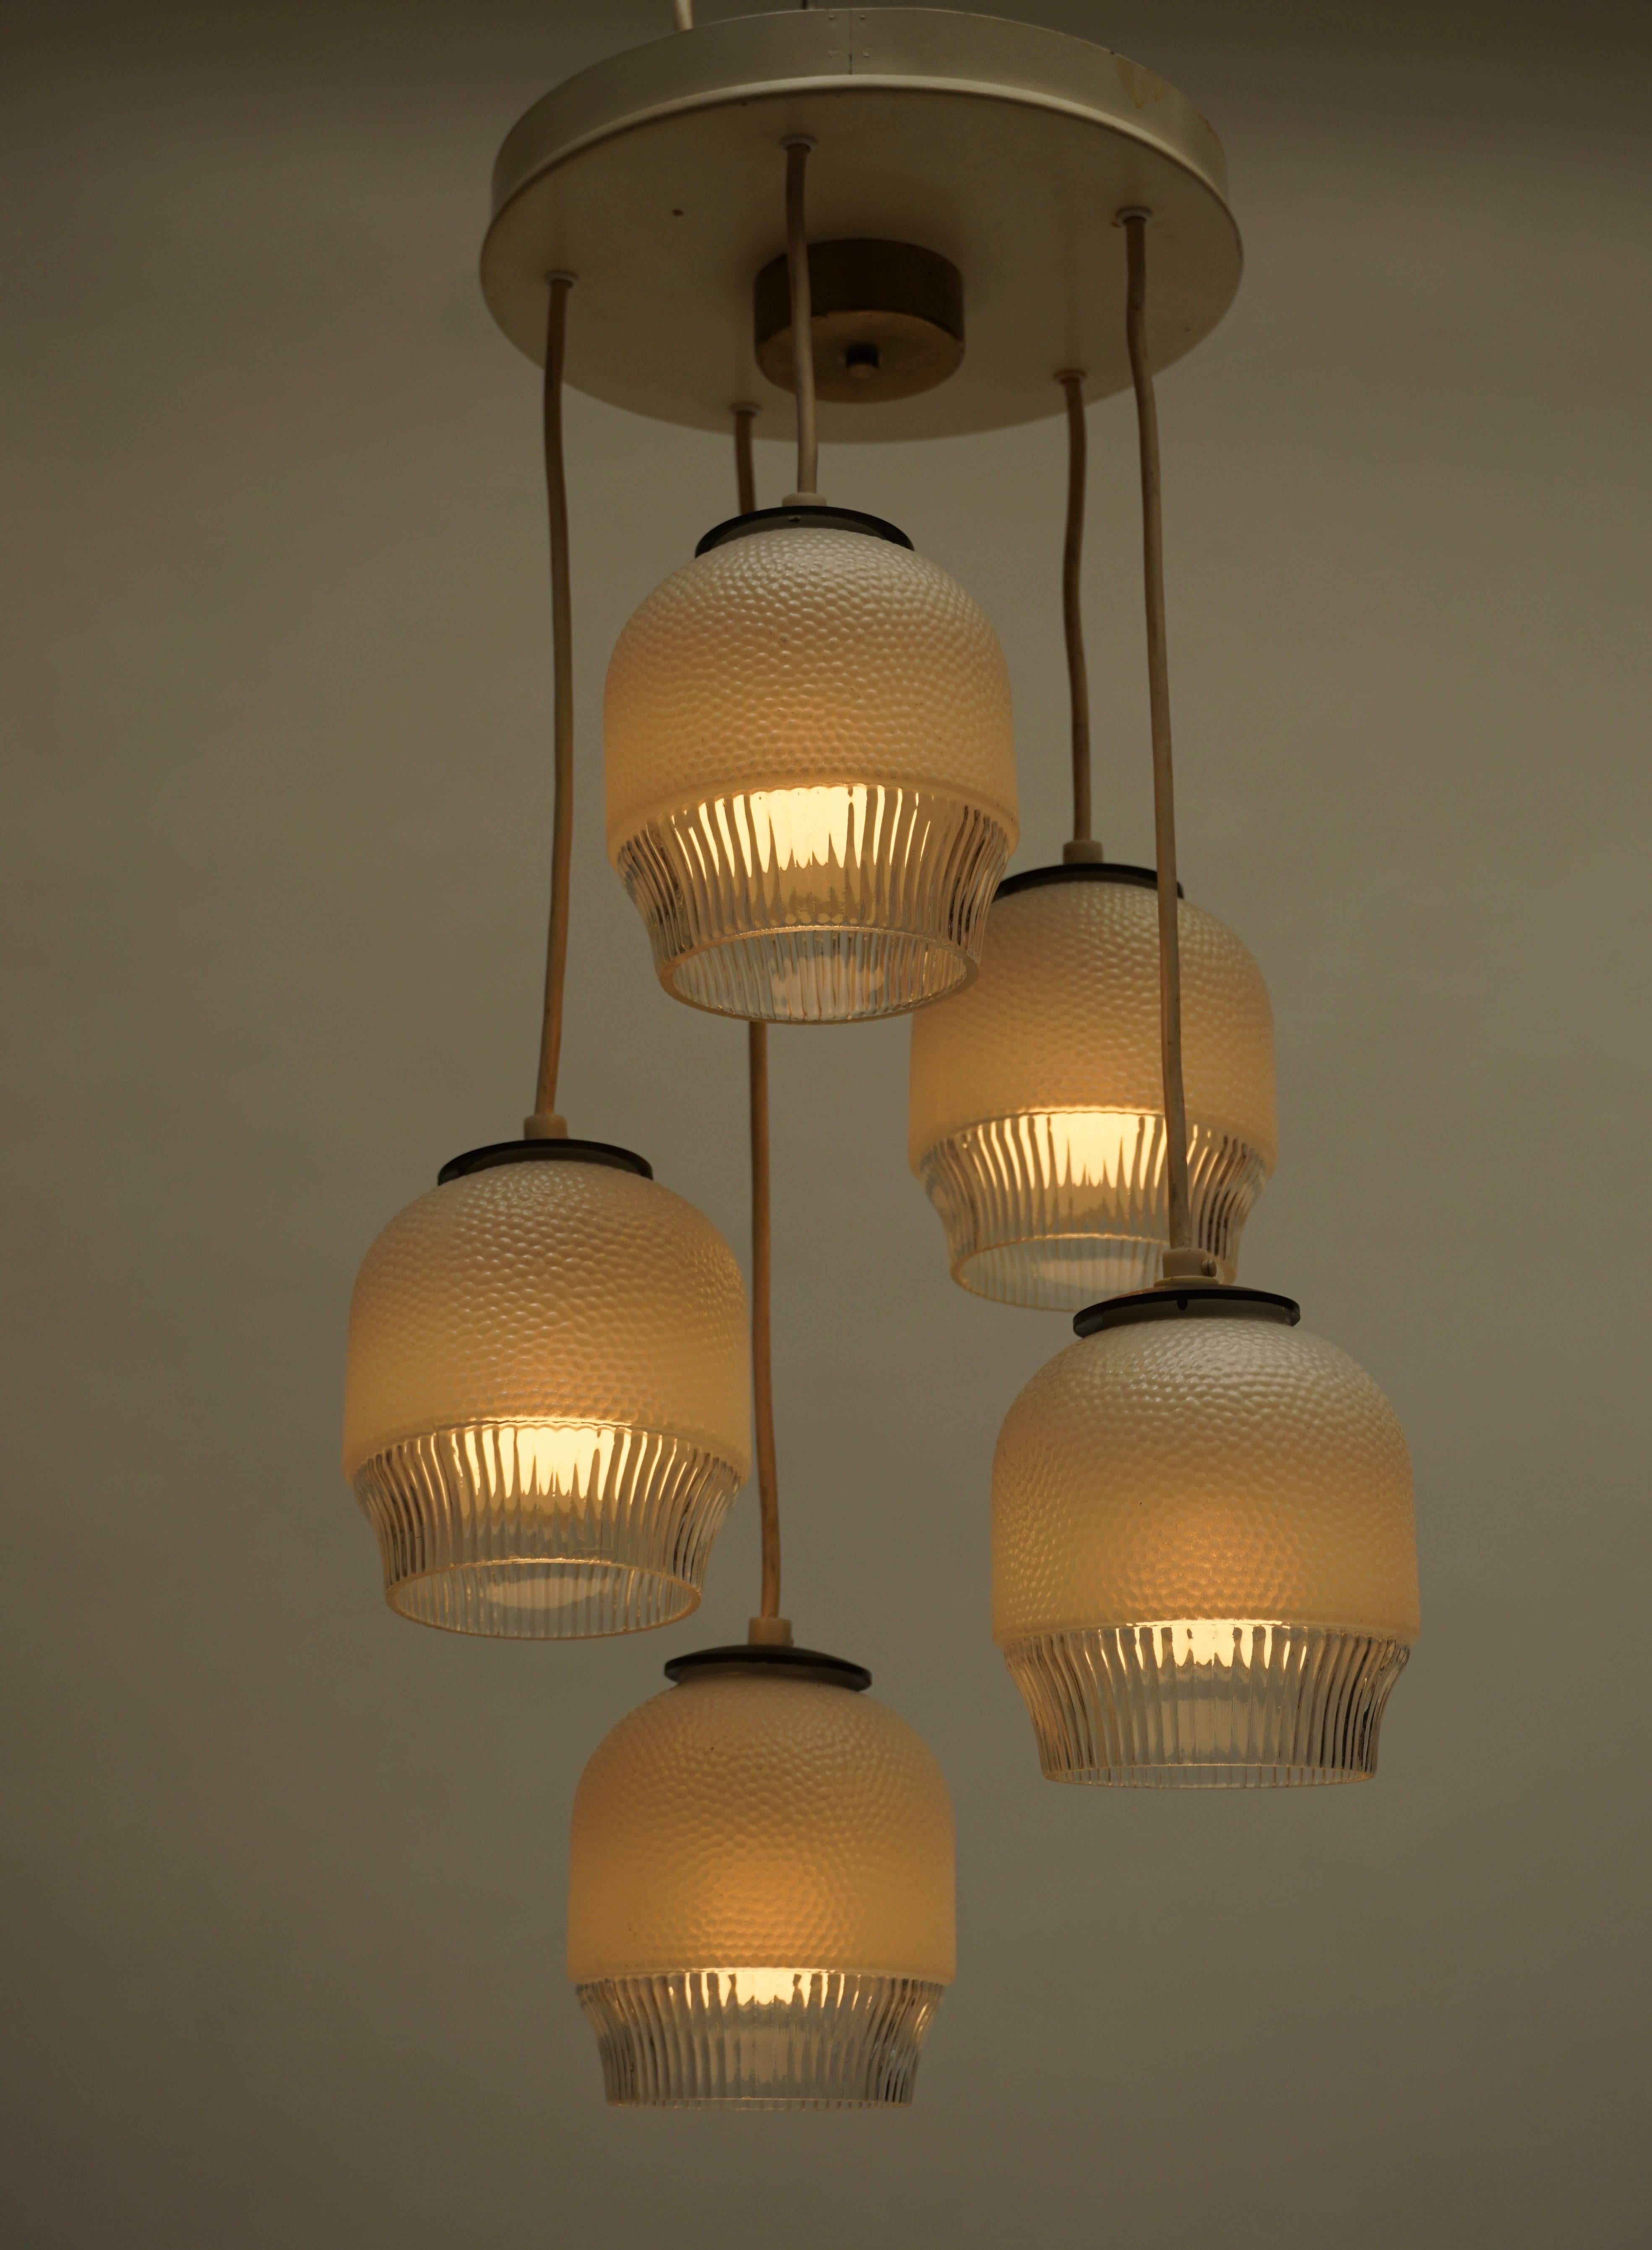 Murano glass pendant light or chandelier.
Measures: Diameter 30 cm.
Height 60 cm.
Five E27 bulbs.